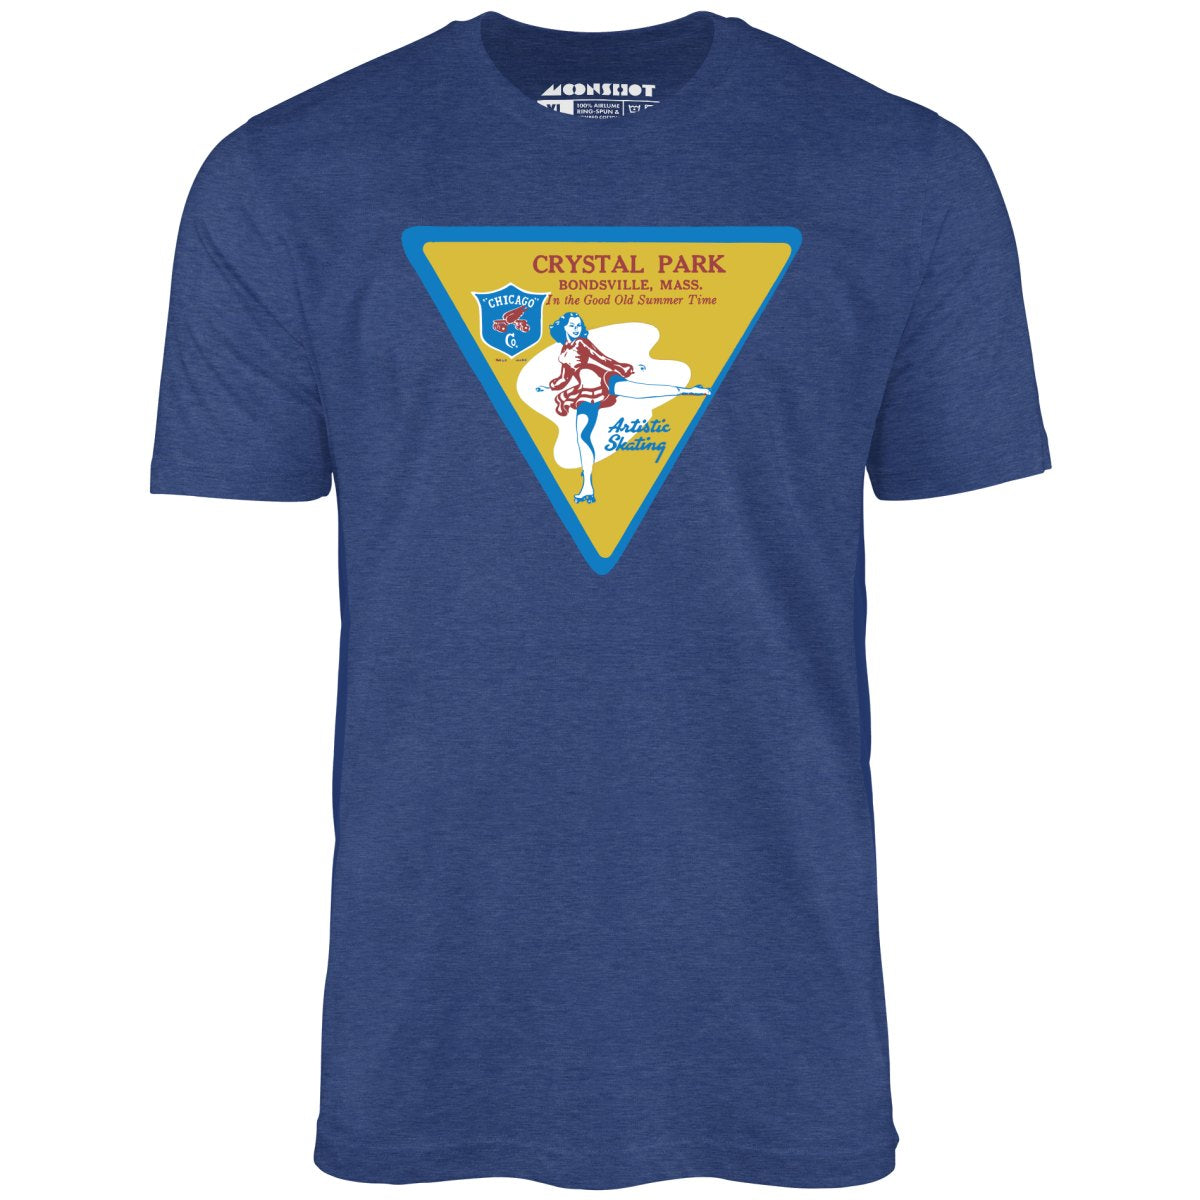 Crystal Park - Bondsville, MA - Vintage Roller Rink - Unisex T-Shirt